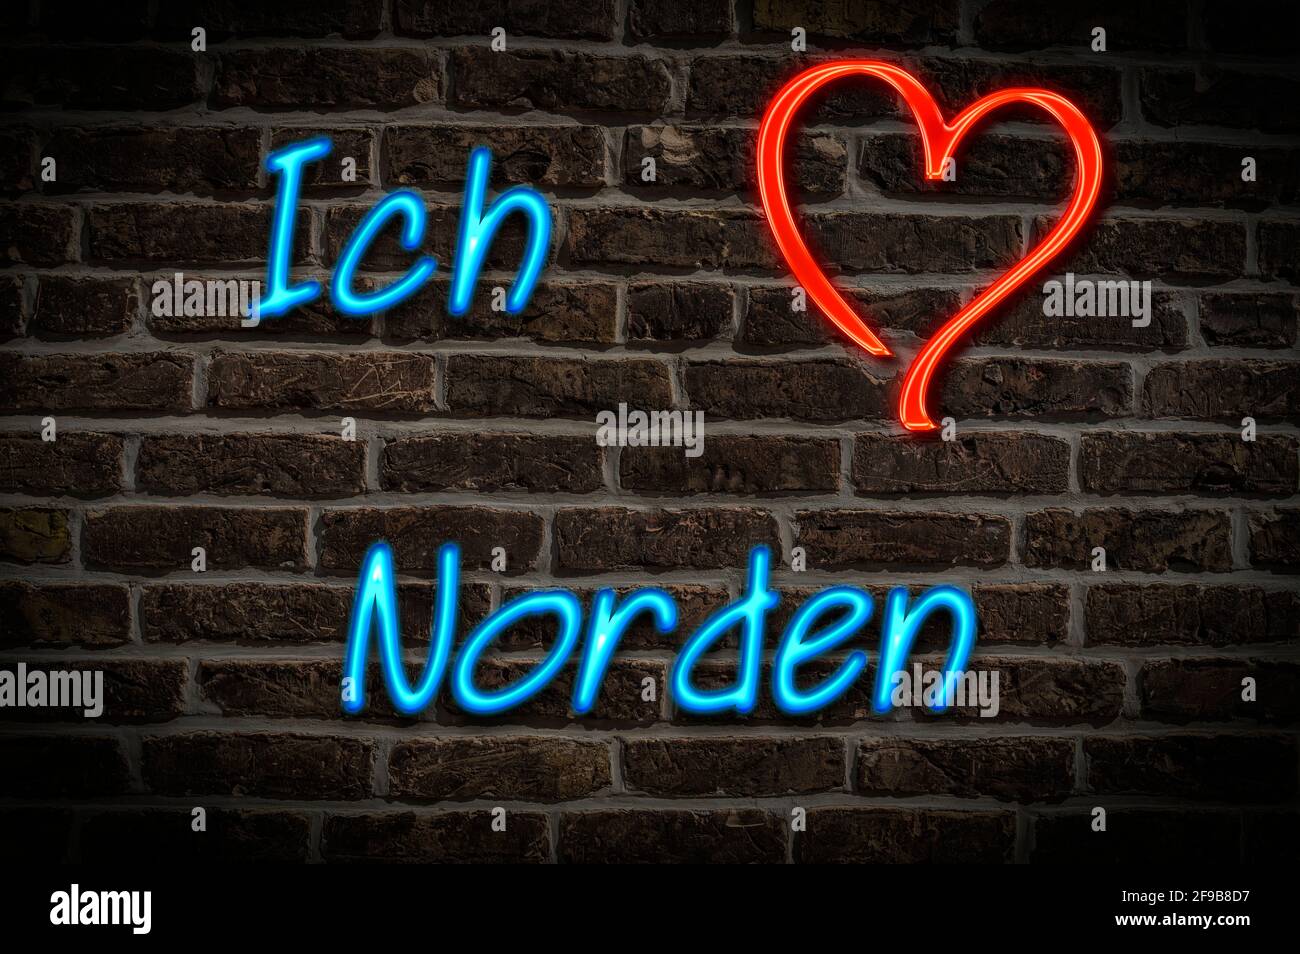 Leuchtreklame, Ich liebe Norden, Niedersachsen, Deutschland, Europa | Illuminated advertising, I love Norden, Lower Saxony, Germany, Europe Stock Photo